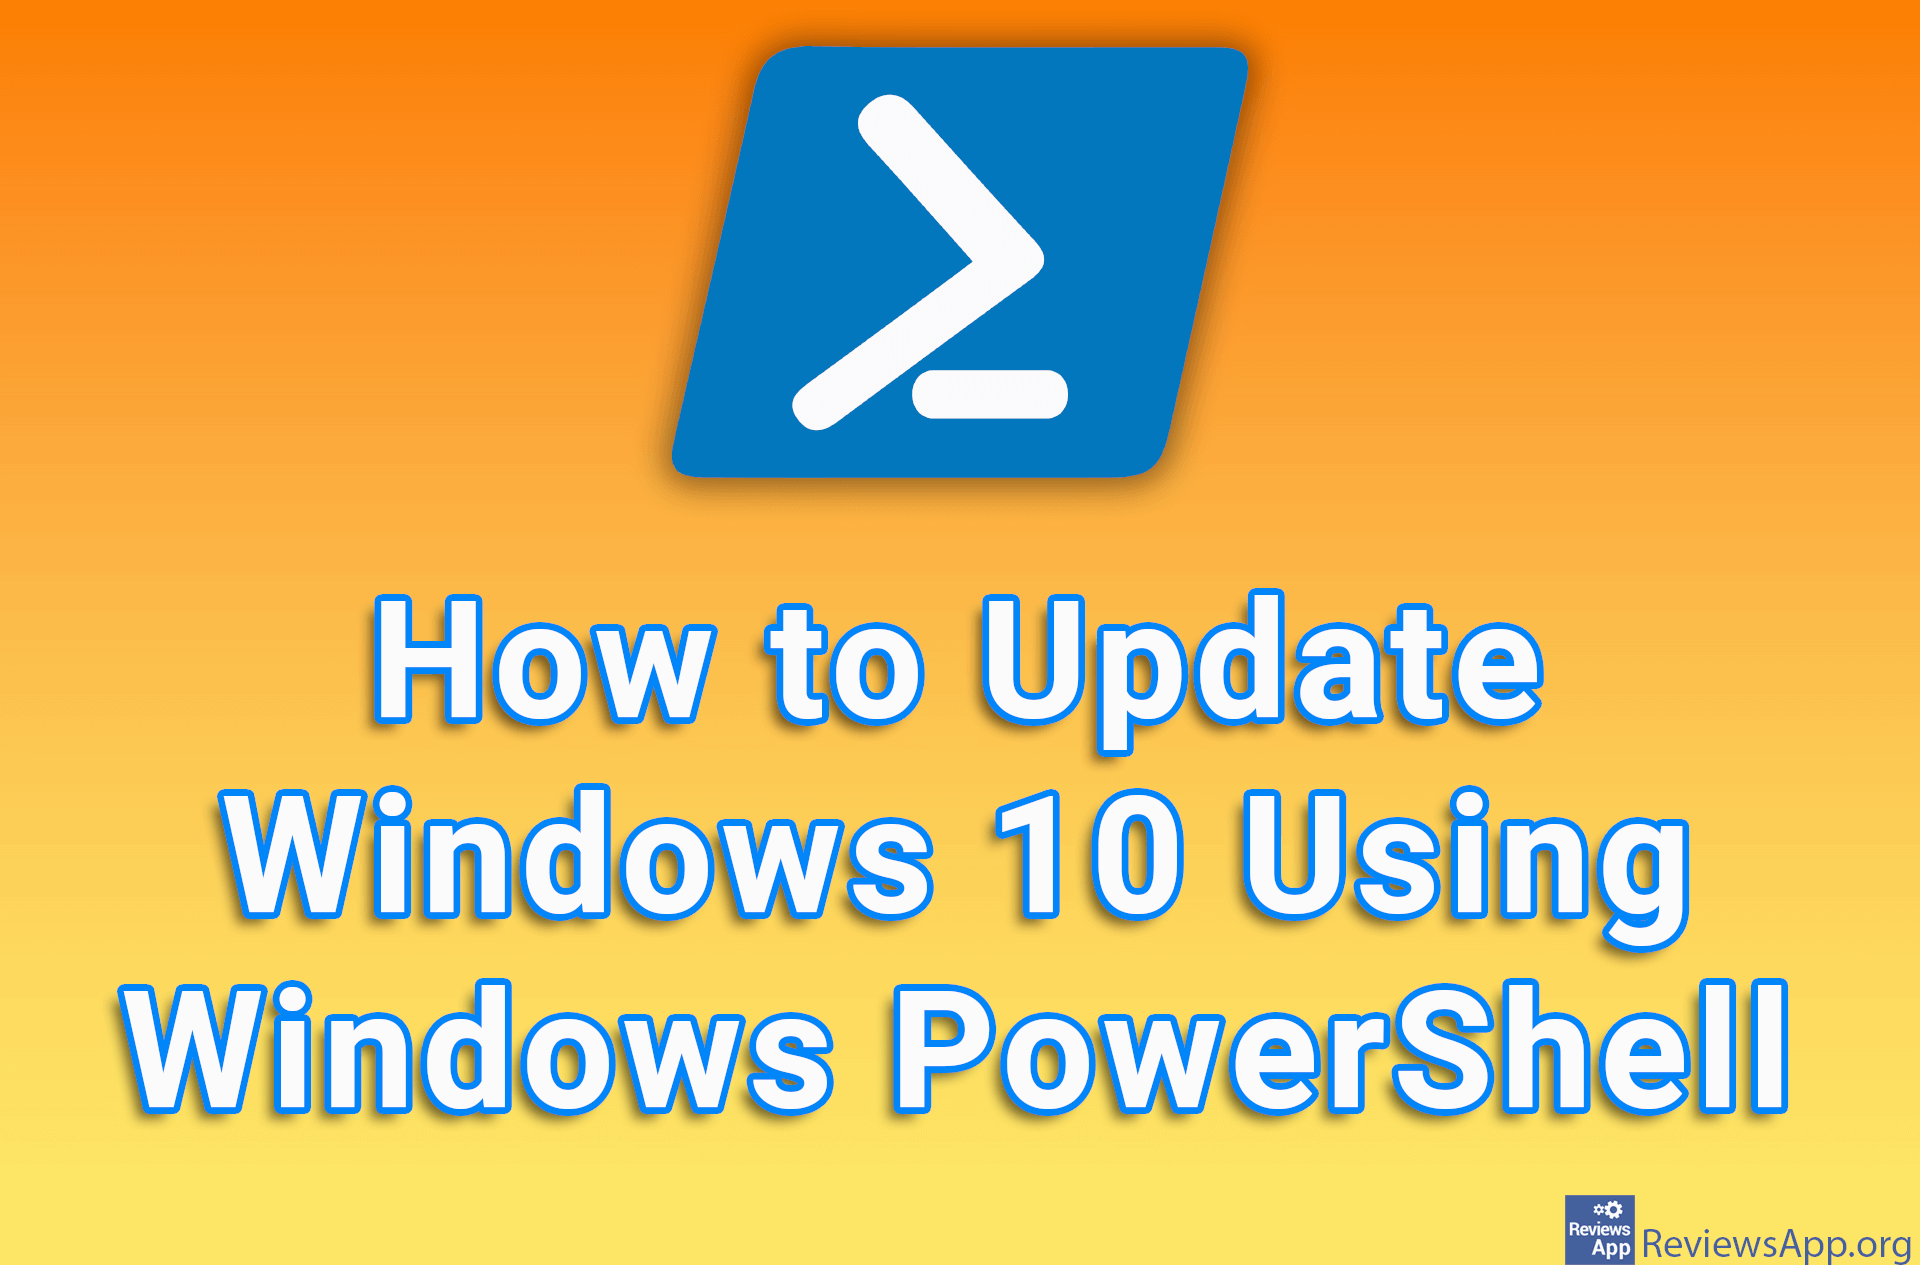 How to Update Windows 10 Using Windows PowerShell